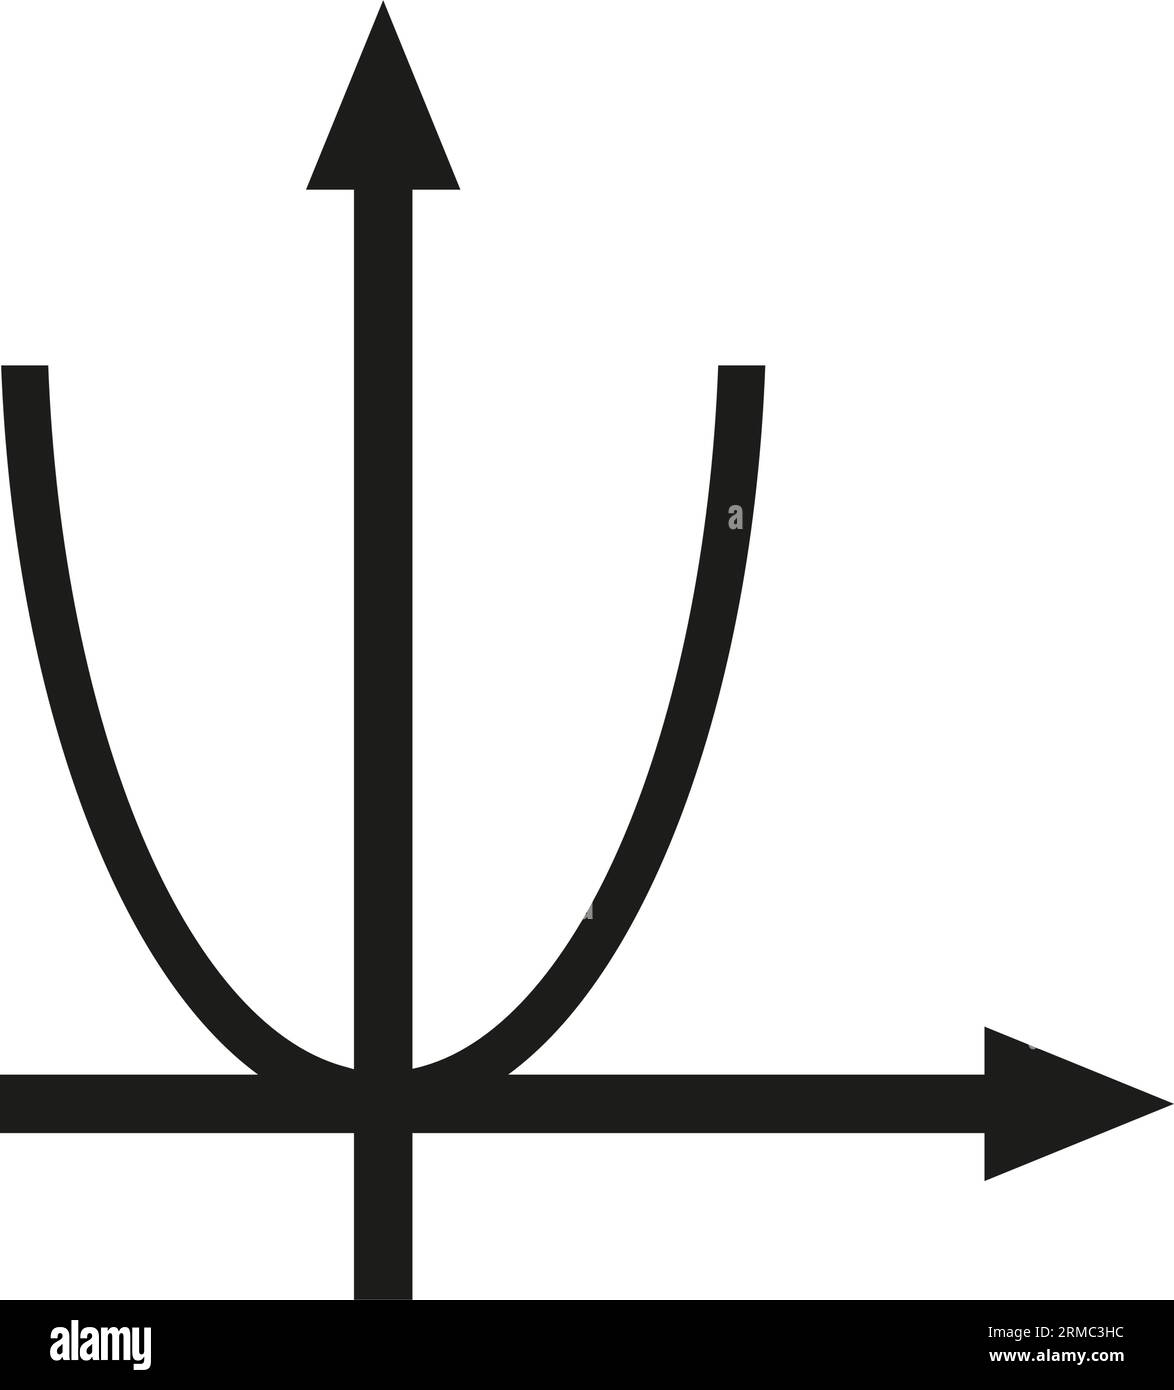 Parabel für Algebra-Symbol im Klassenzimmer Stock Vektor